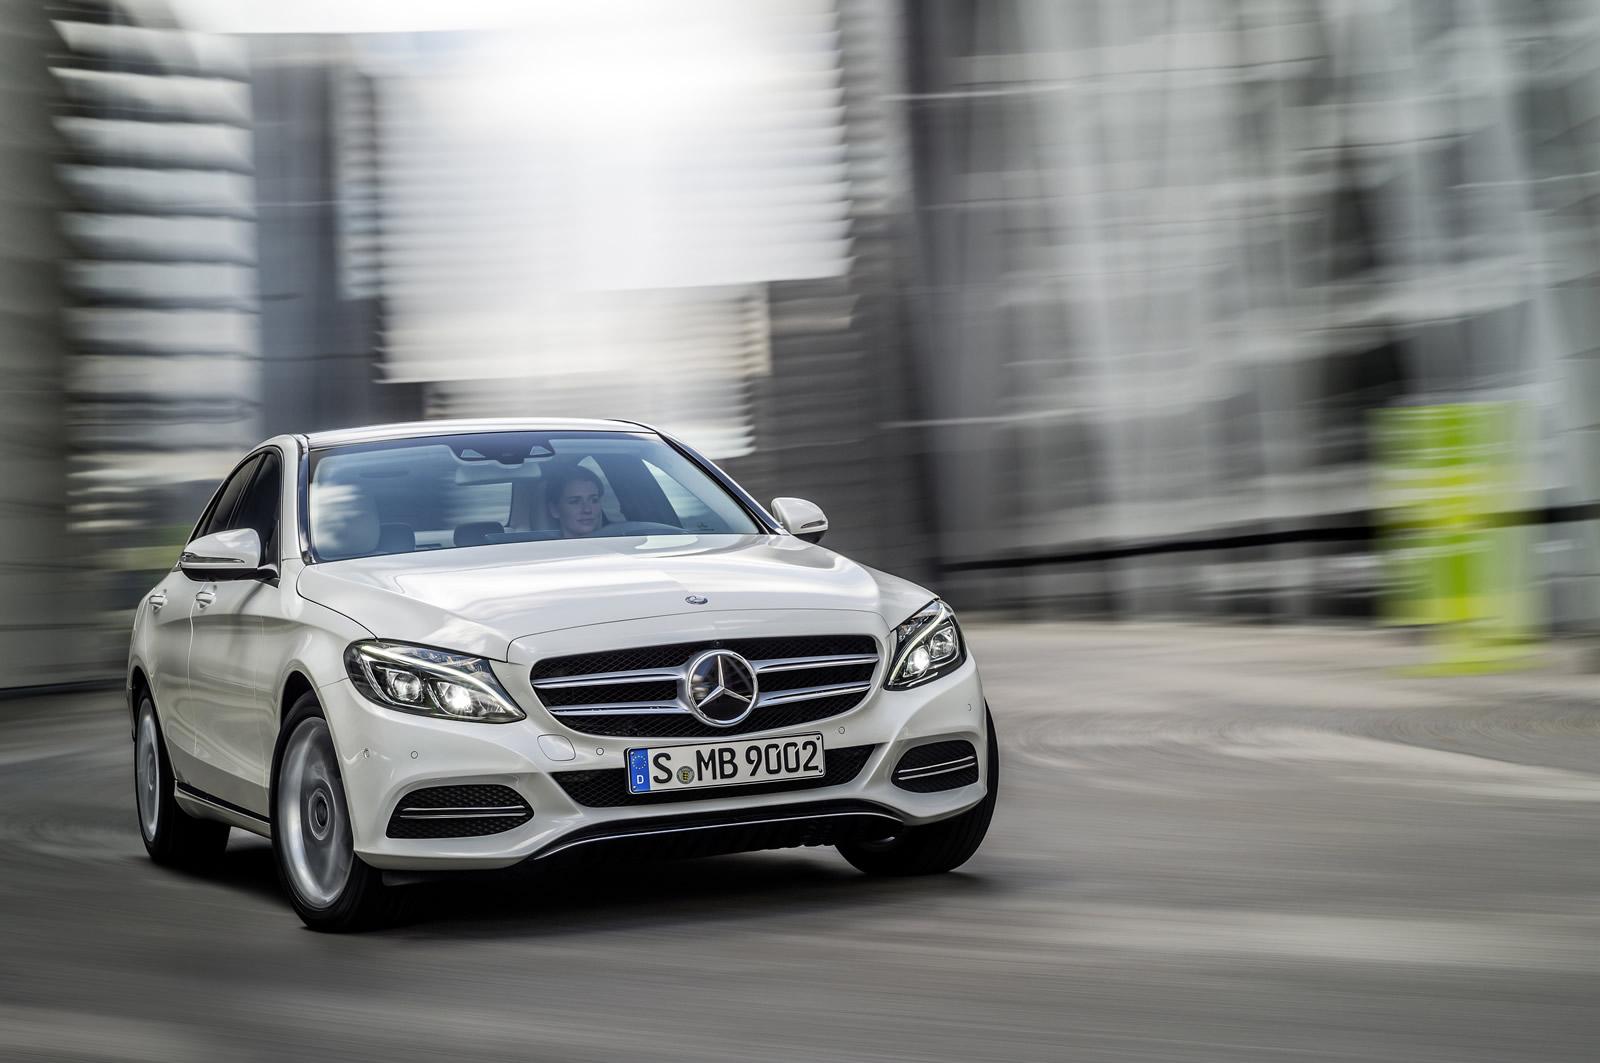 http://www.pedal.ir/wp-content/uploads/2014-Mercedes-Benz-C-Class-04.jpg